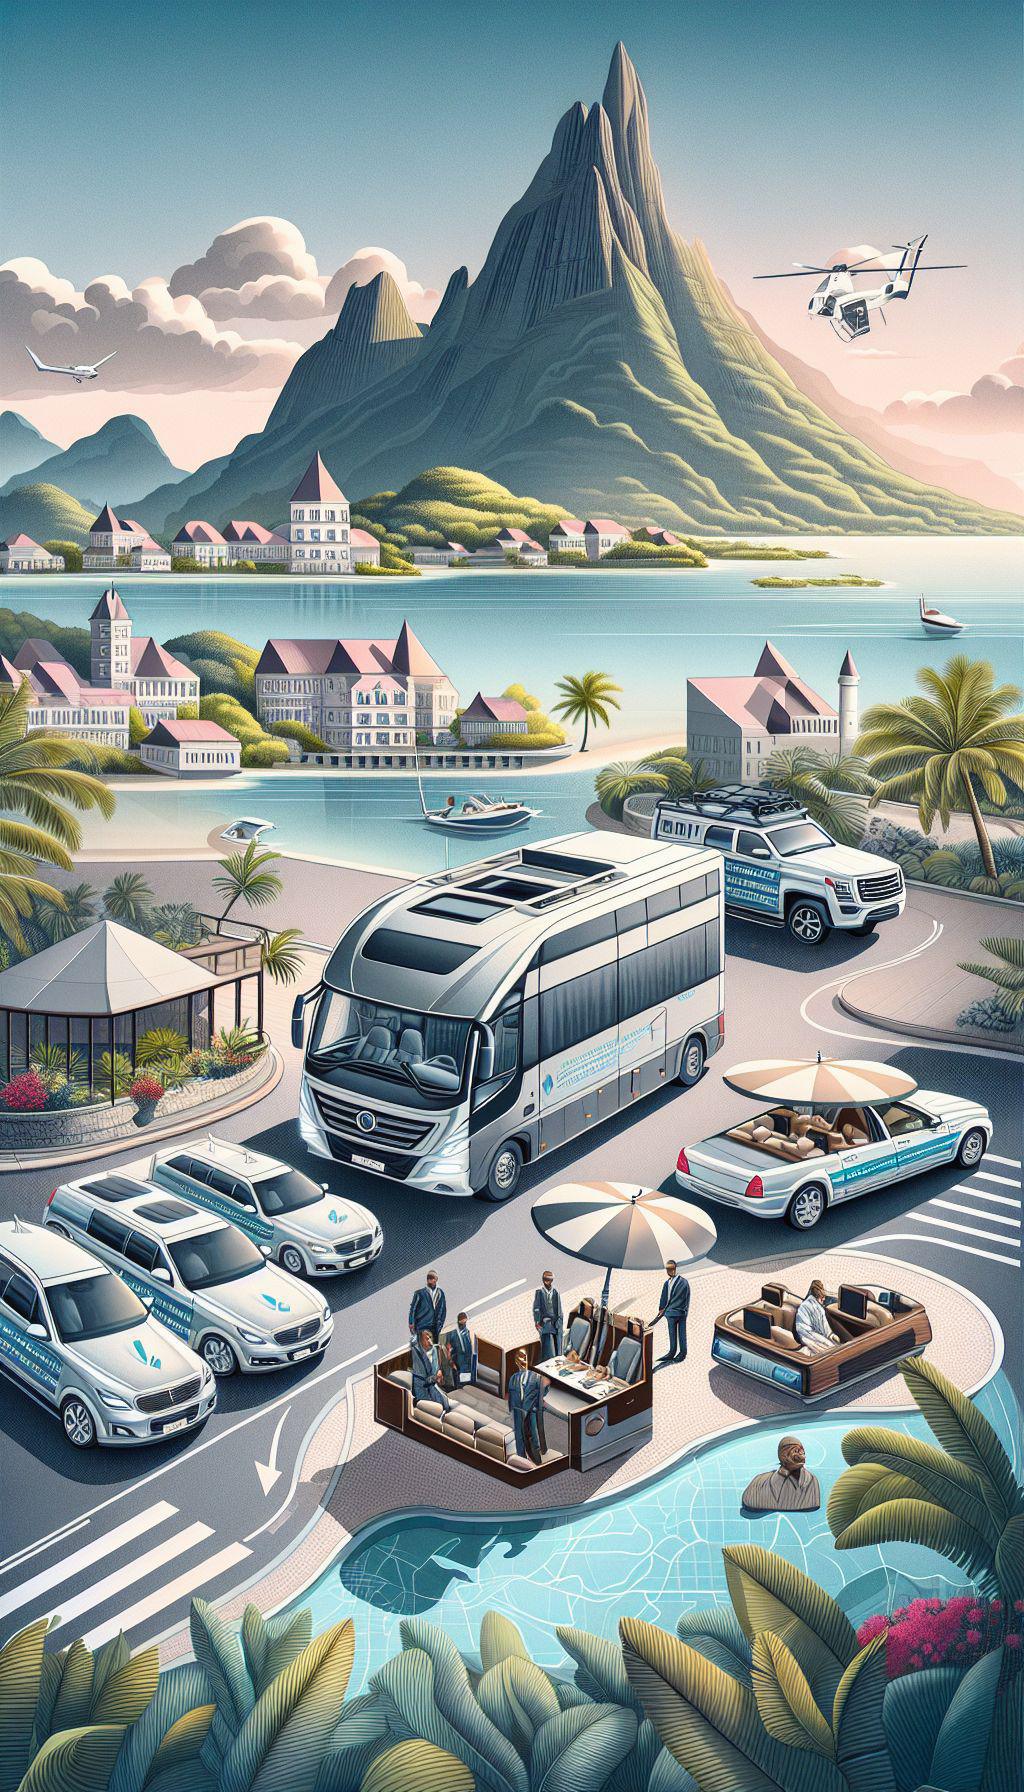 Comment Racing luxury Madinina 972 assure-t-il le confort des passagers à mobilité réduite lors de leurs déplacements en Martinique ?